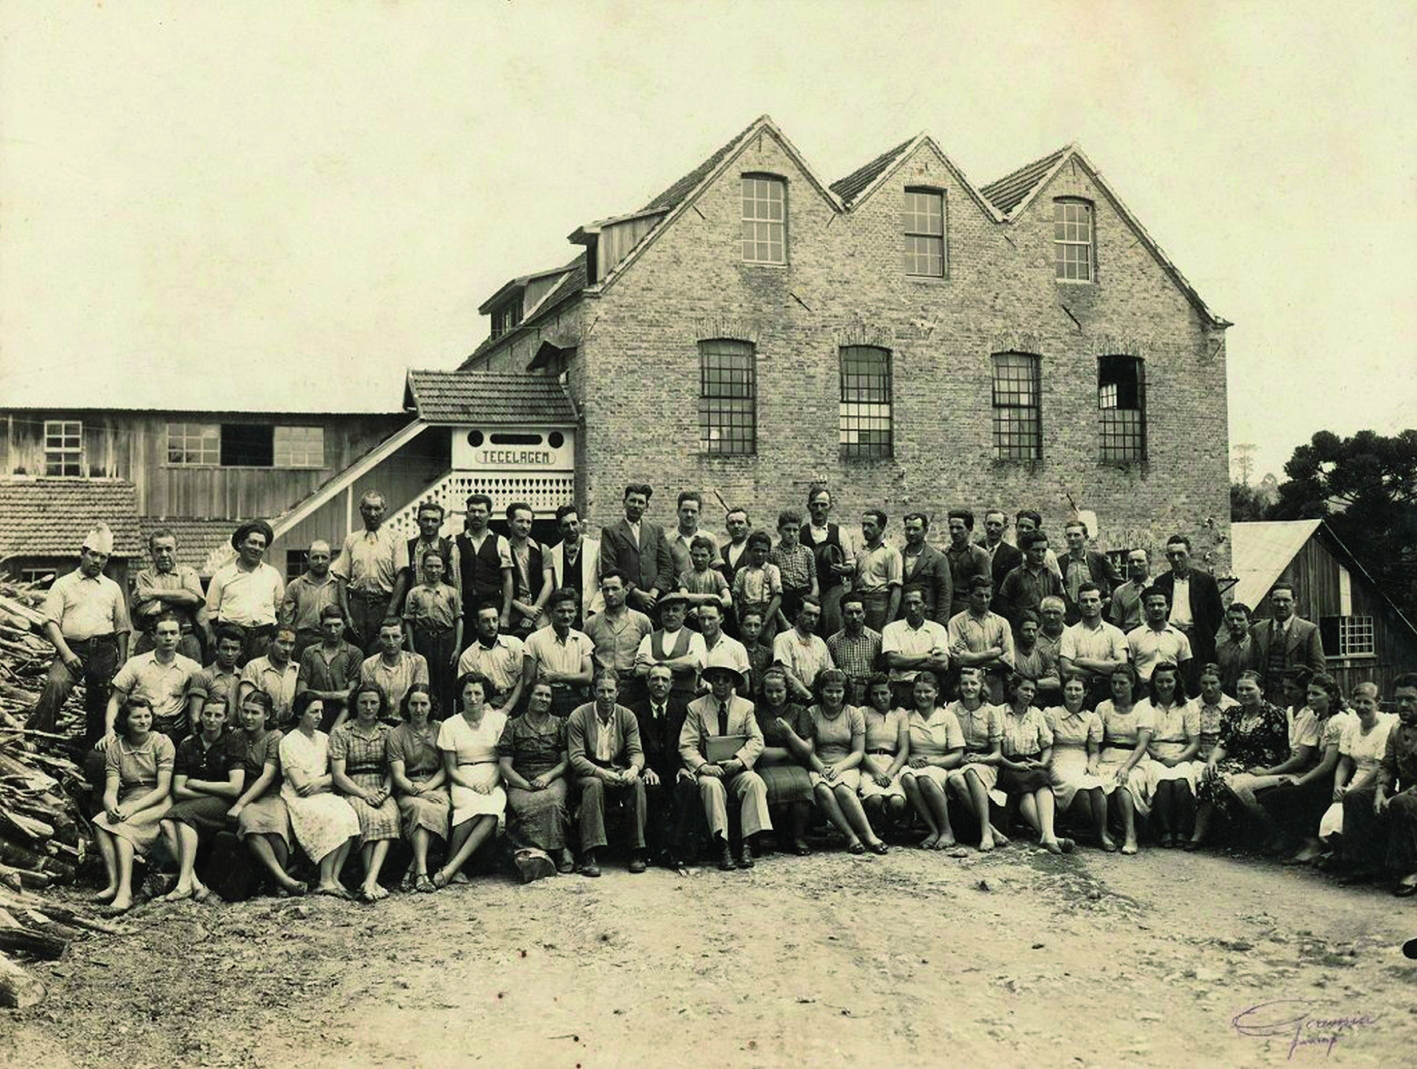 Fotografia em sépia. Em frente a fachada de uma fábrica, um grupo de pessoas reunidas, enfileiradas lado a lado. À frente, sentadas. E atrás outras duas filas de pessoas em pé.